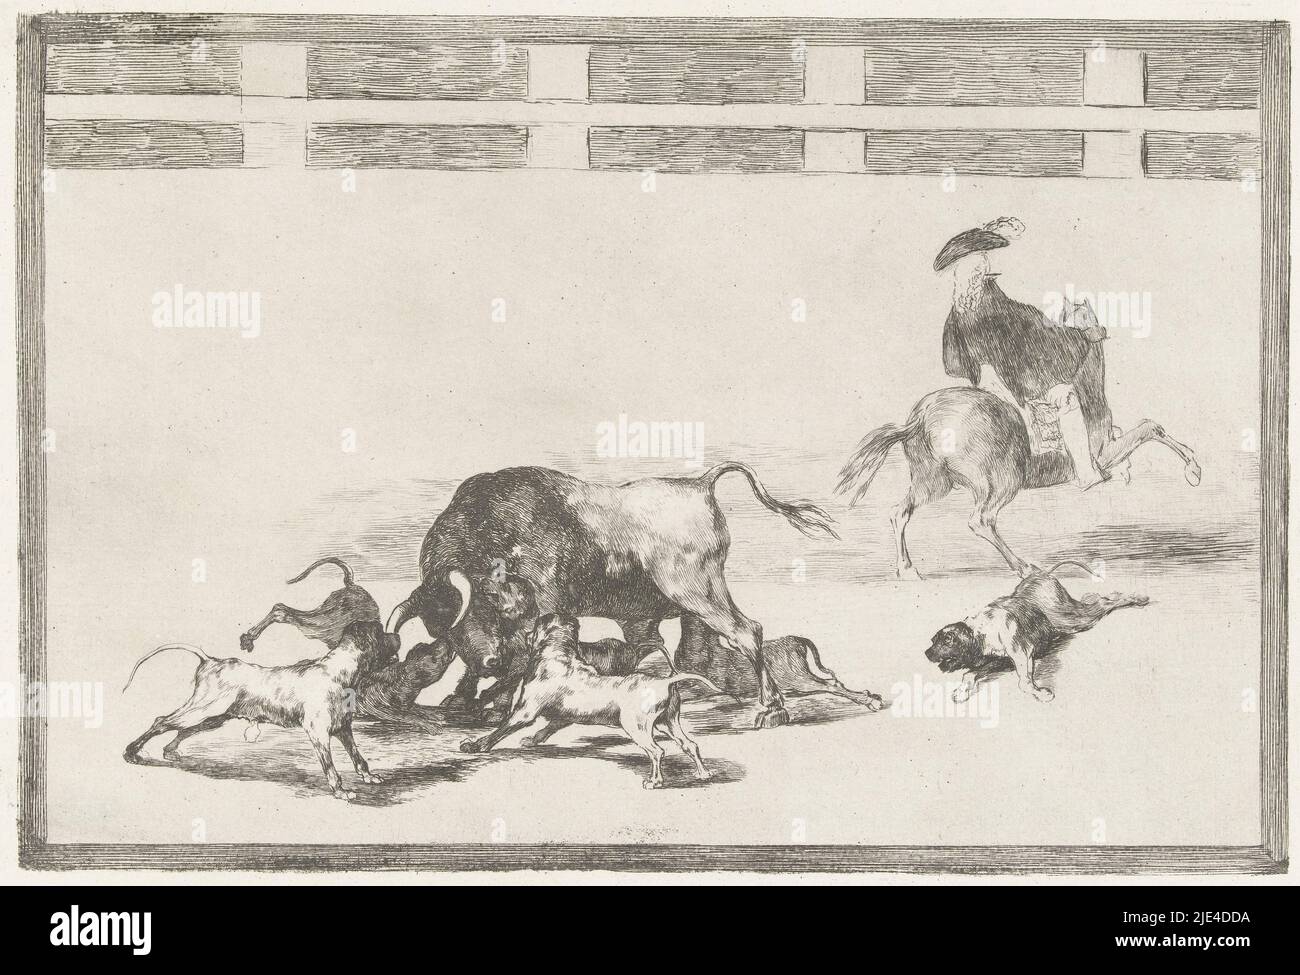 Bulle von Hunden angegriffen, Francisco de Goya, 1811 - 1816, fünf Hunde greifen einen Bullen in einer Arena an. Ein Hund liegt verwundet auf dem Boden. Rechts ein Mann zu Pferd, von hinten gesehen., Druckerei: Francisco de Goya, Francisco de Goya, Spanien, 1811 - 1816, Papier, Ätzen, Trockenpunkt, H 245 mm × B 355 mm Stockfoto